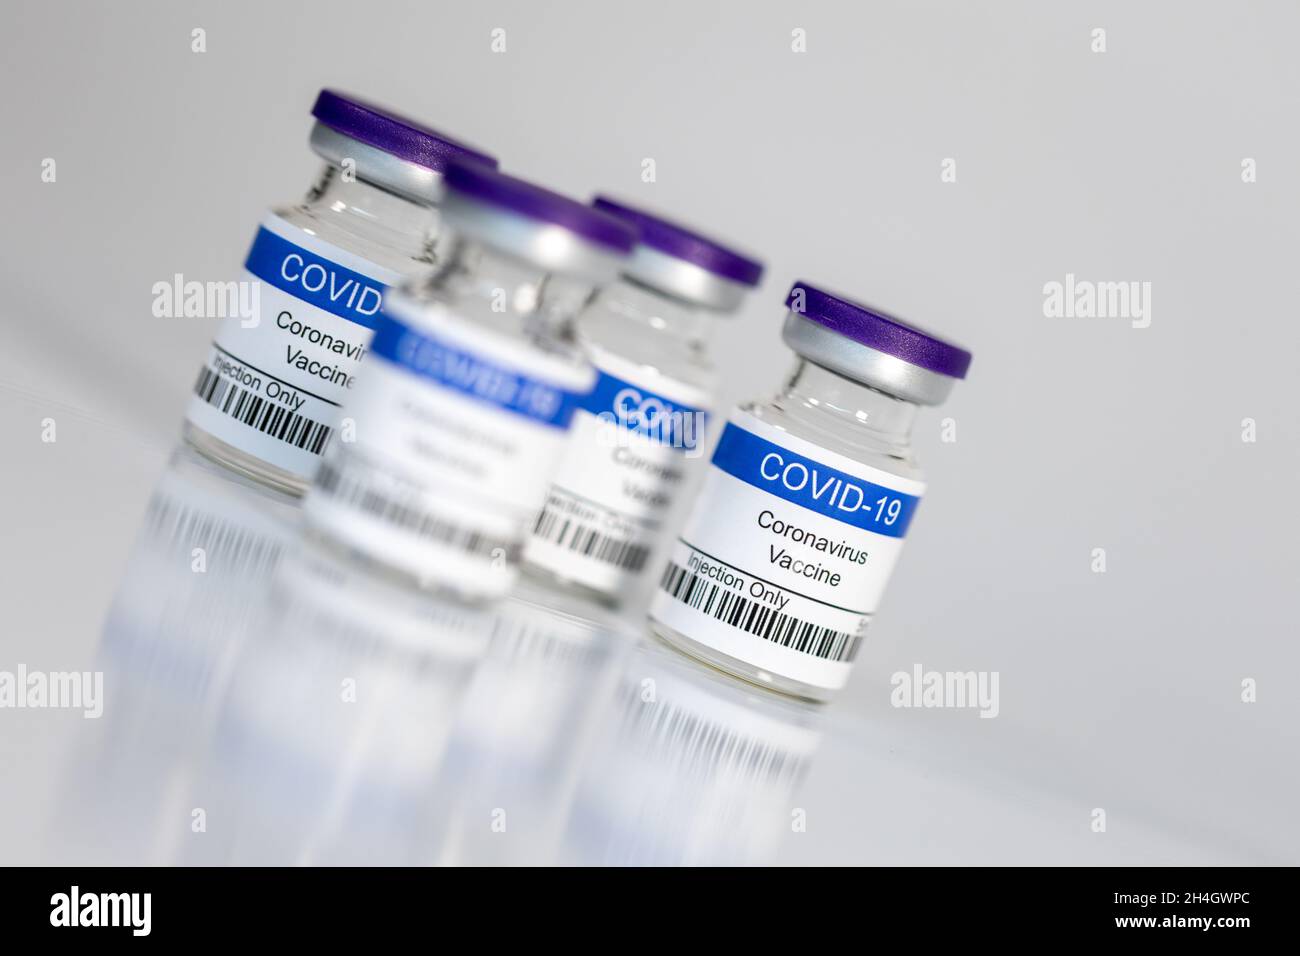 Vials of Coronavirus vaccine Stock Photo